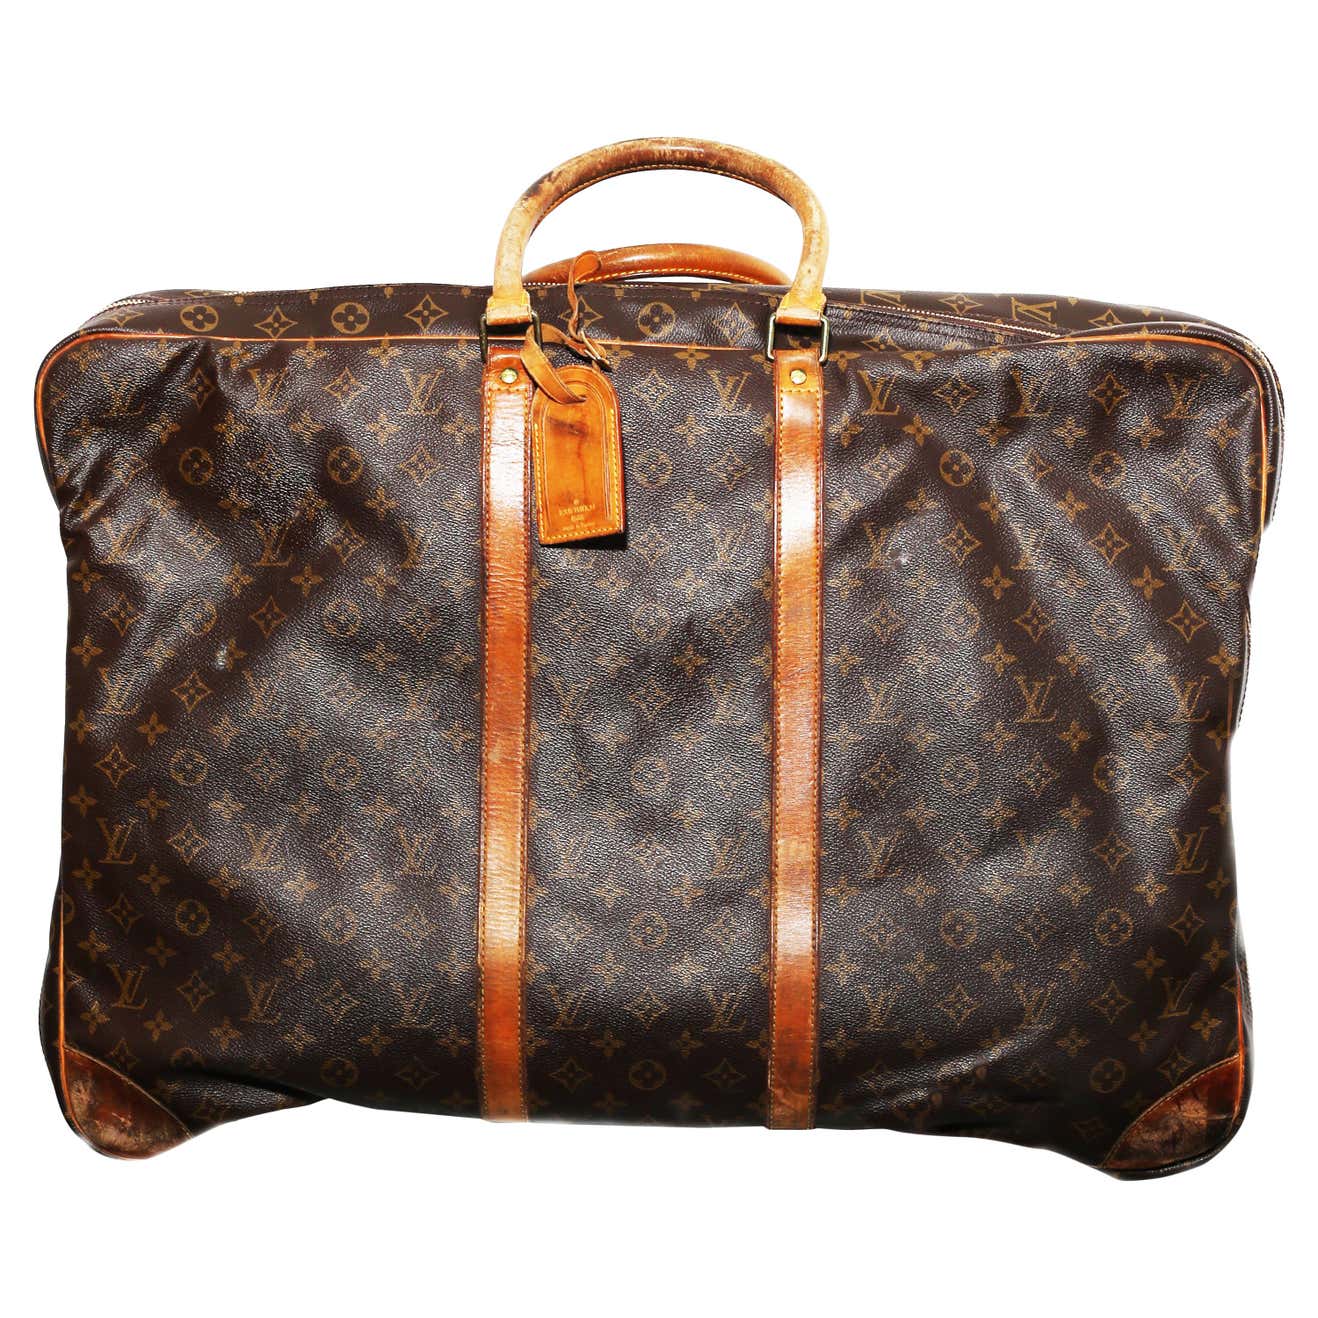 Louis Vuitton Monogram Sirius Suitcase 70cm Luggage Weekender Travel ...